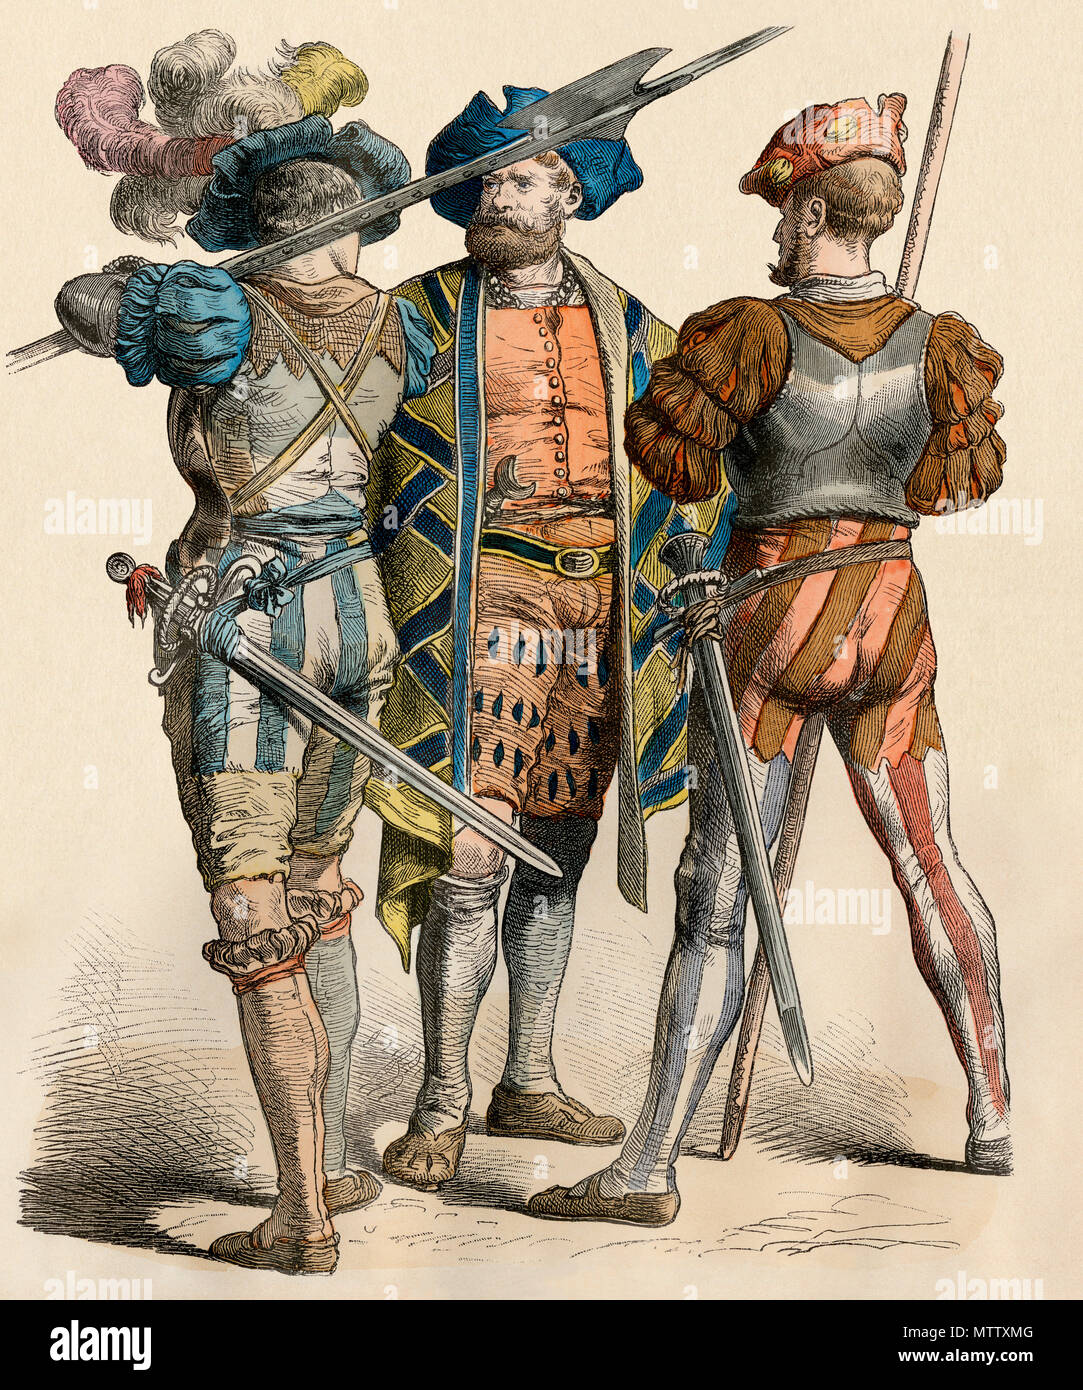 Allemand pays squire avec ses agents armés, années 1500. Impression couleur à la main Banque D'Images